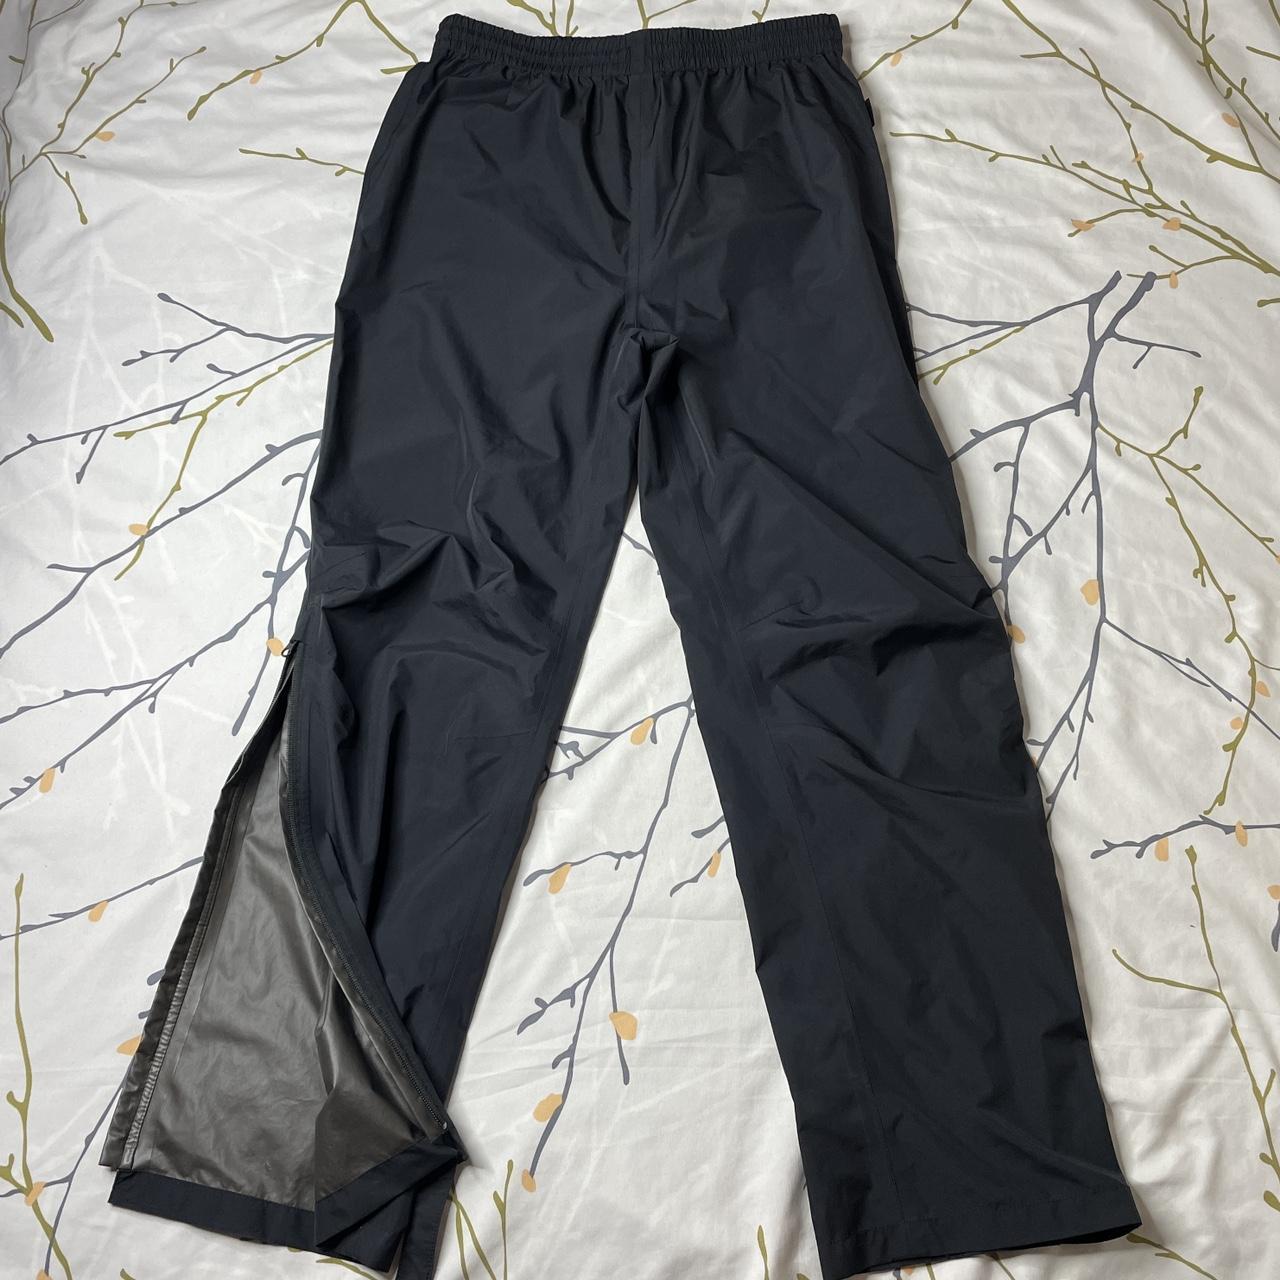 Product Image 3 - Gortex Pants Black Size Medium
One